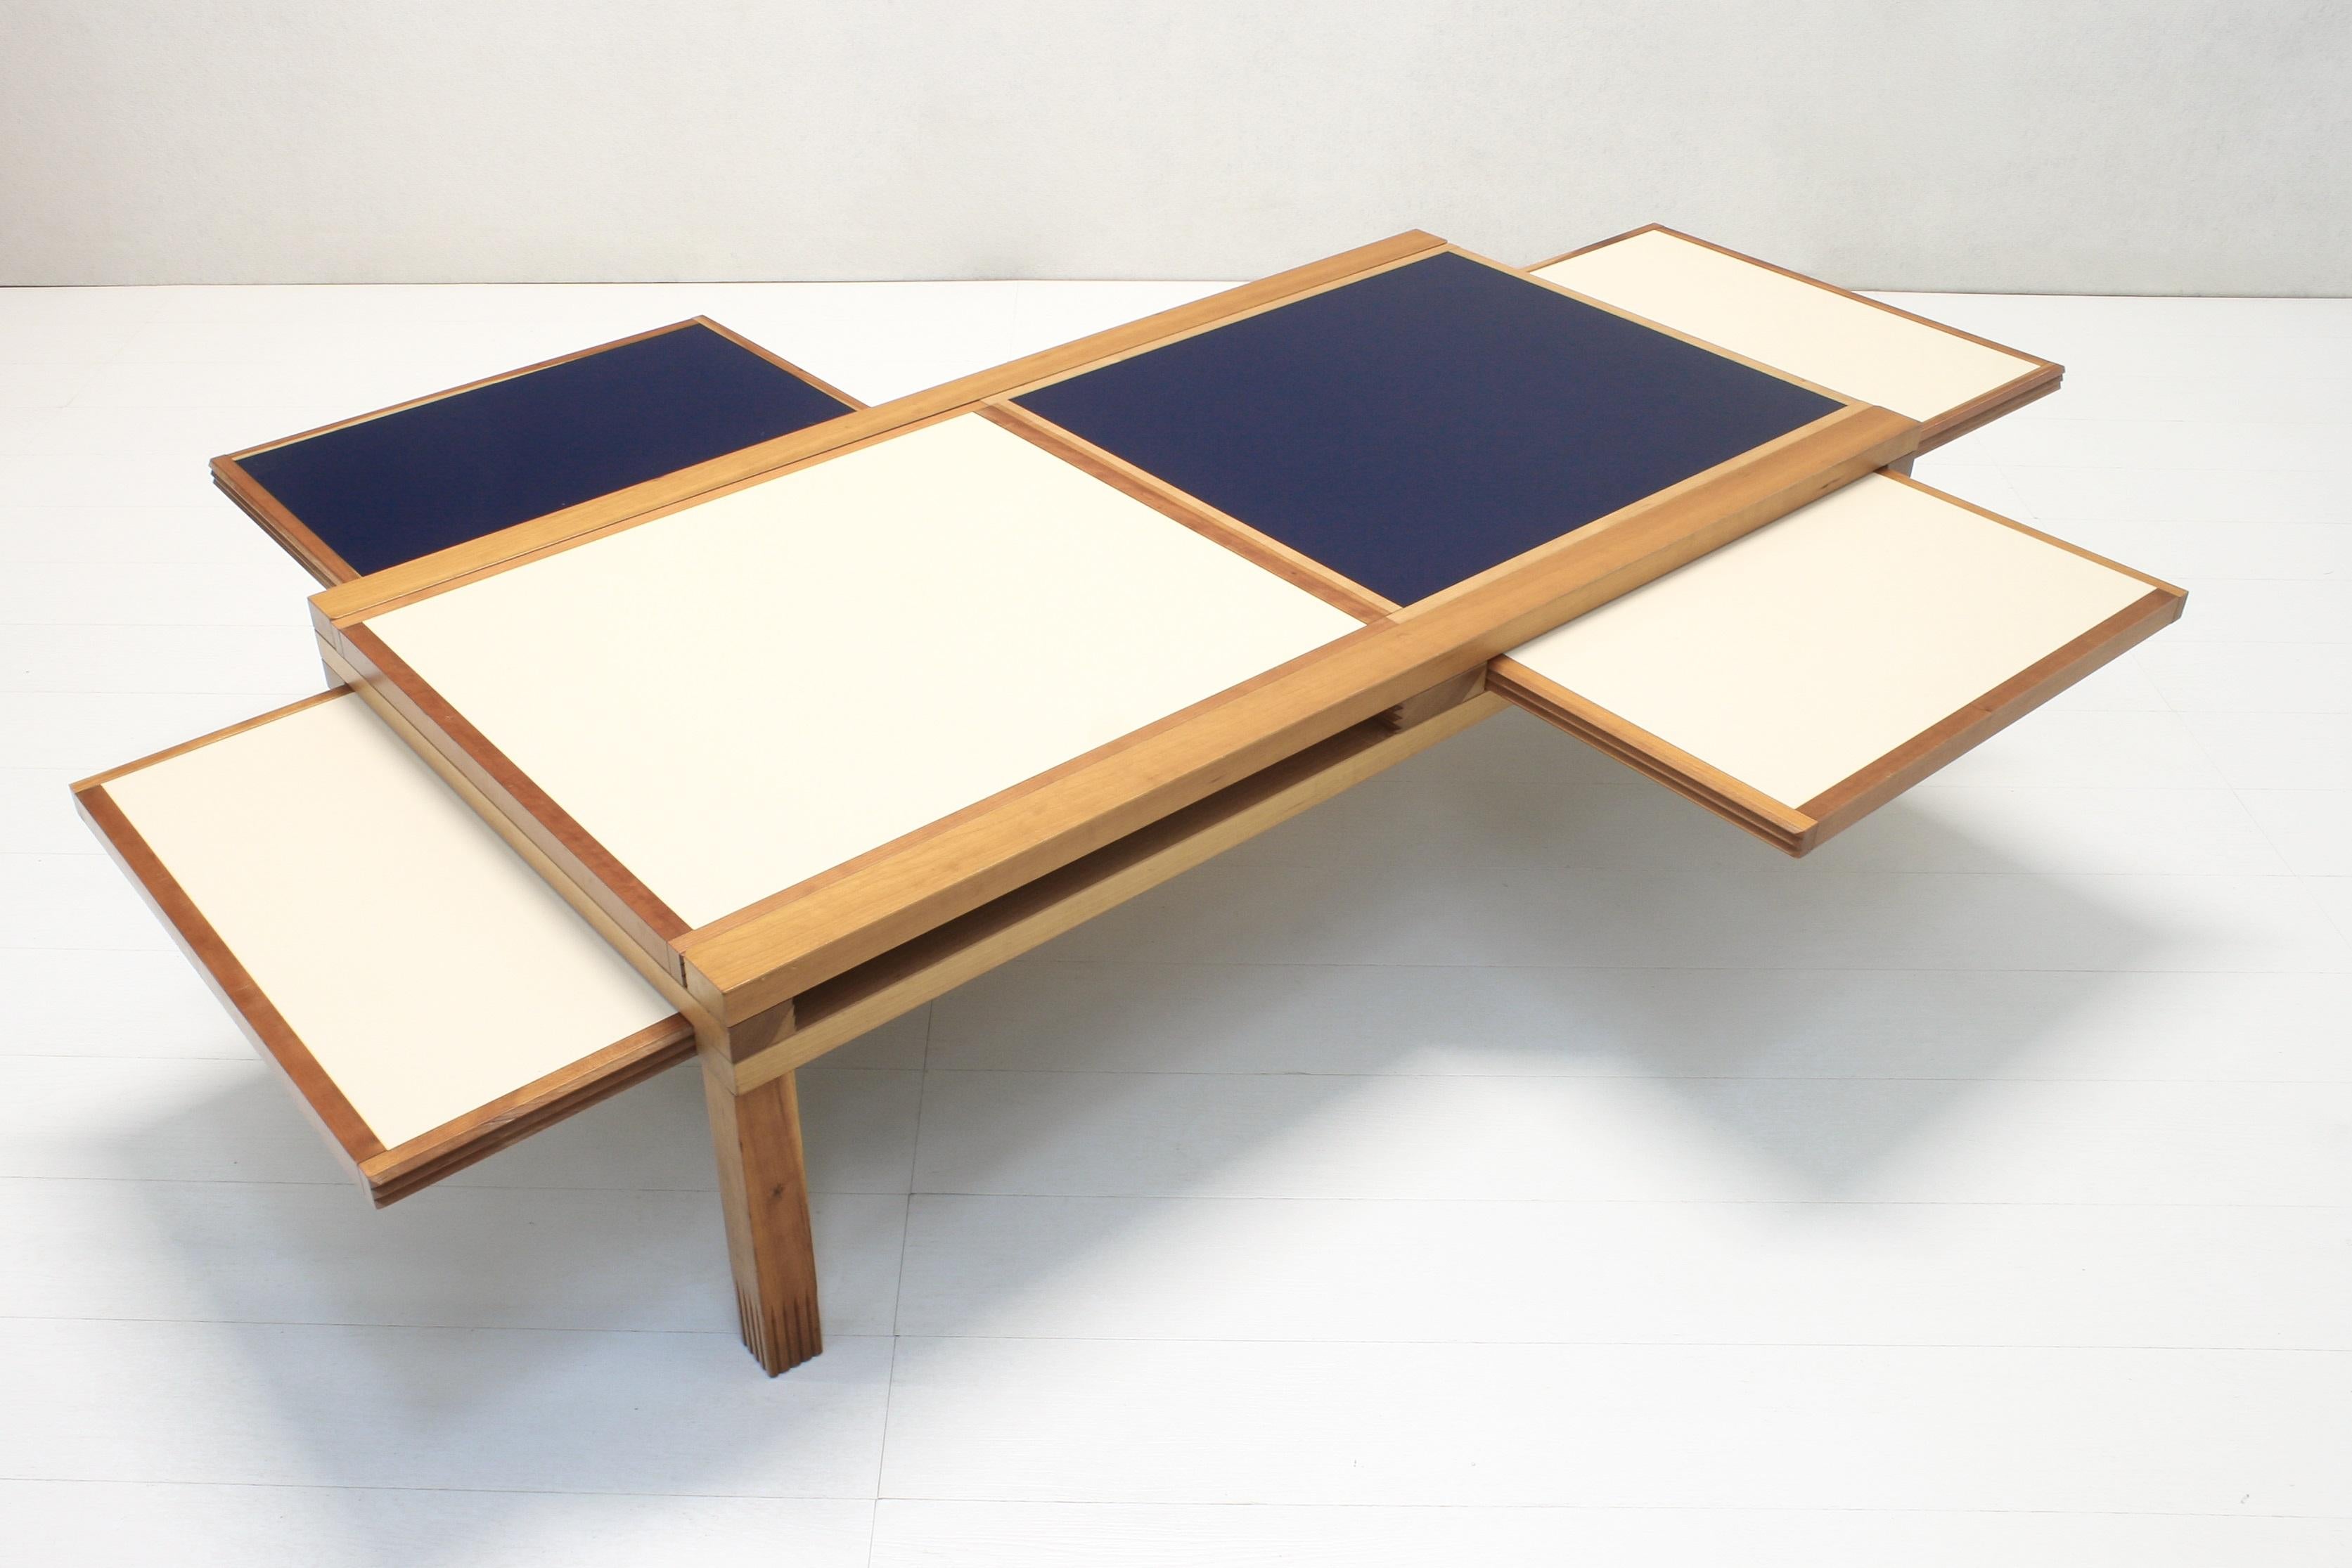 Cette construction modulaire de table basse a été conçue par Bernard Vuarnesson et vous permet de créer votre propre composition à l'aide des six plateaux interchangeables, tous dotés d'une surface bicolore, blanc cassé et bleu profond.